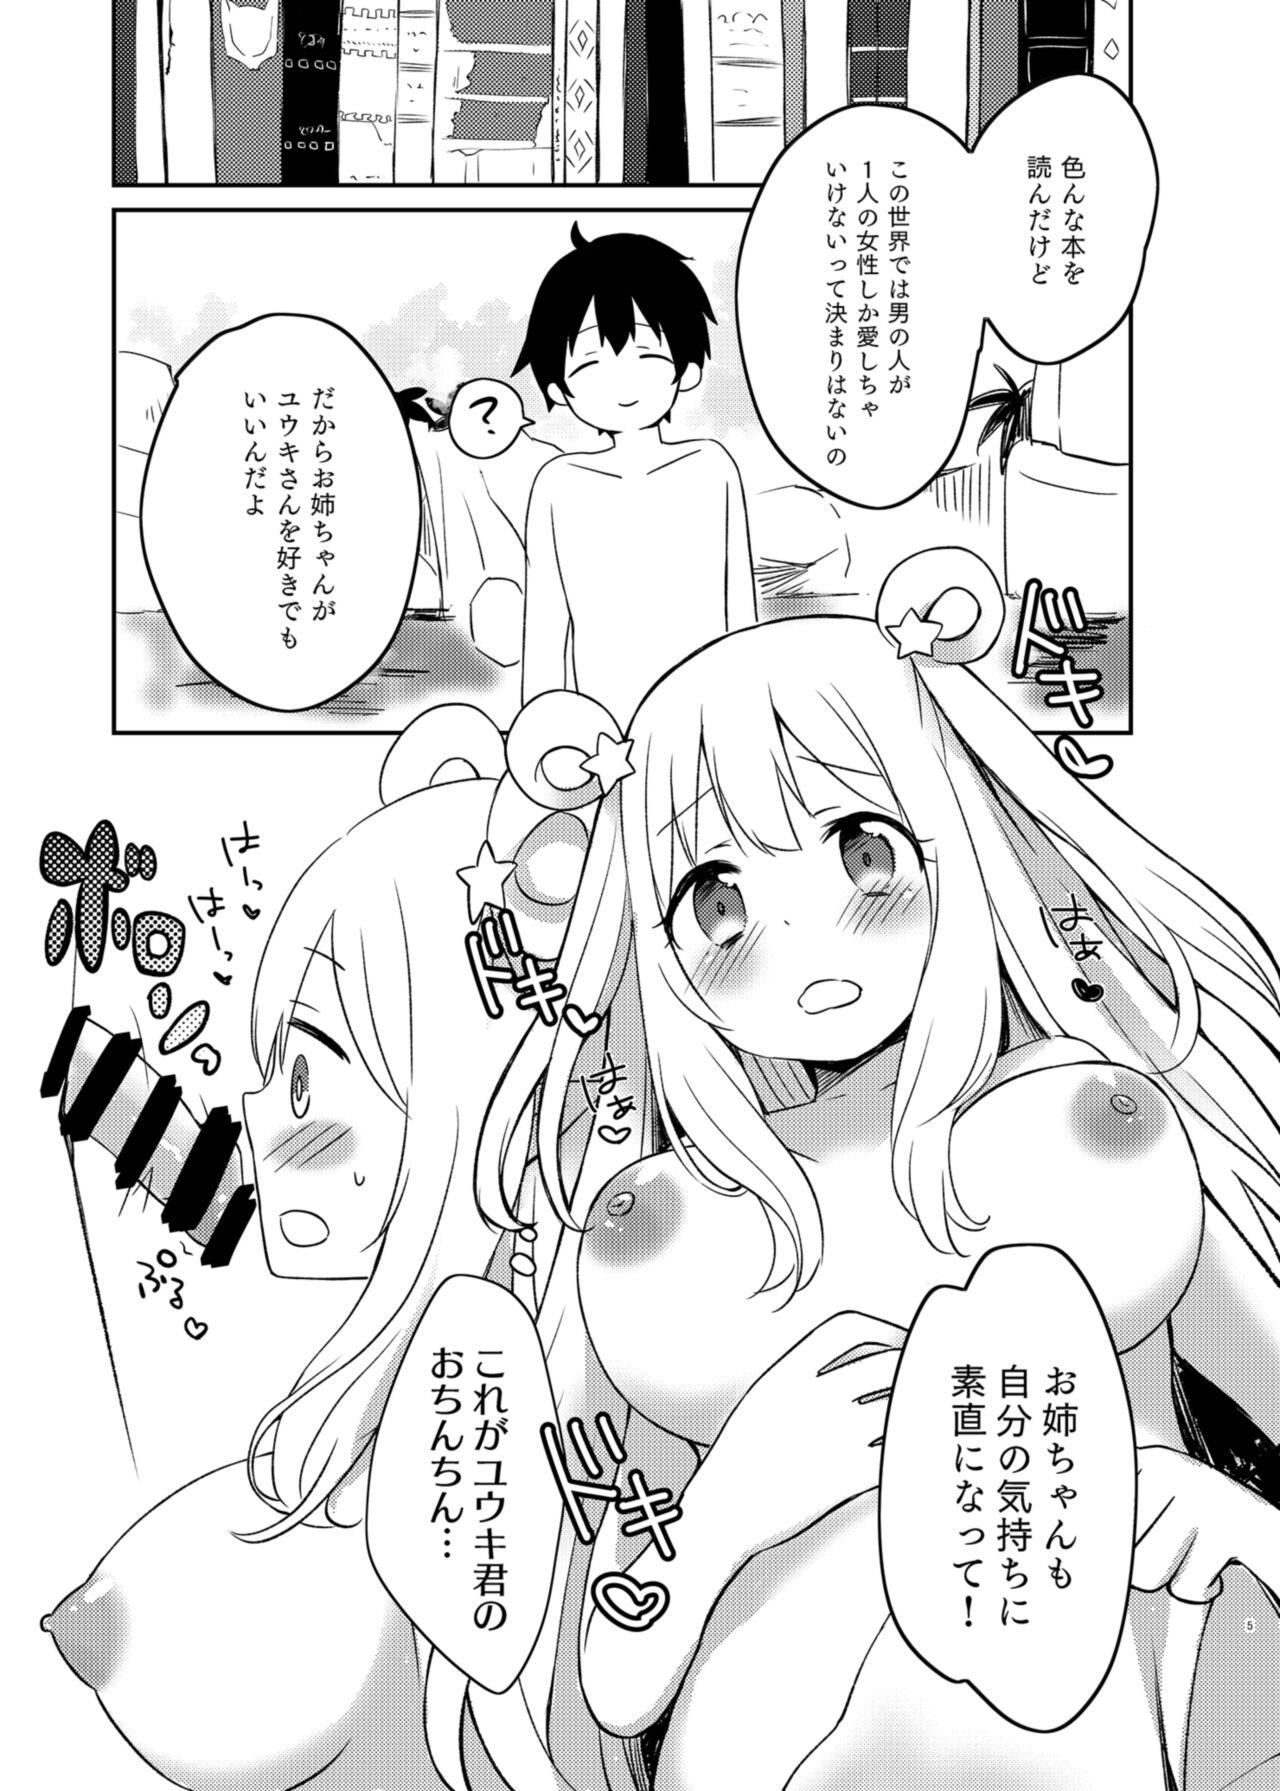 Babes Hatsune to Shiori no Yukemuri Daisakusen - Princess connect Gaydudes - Page 5